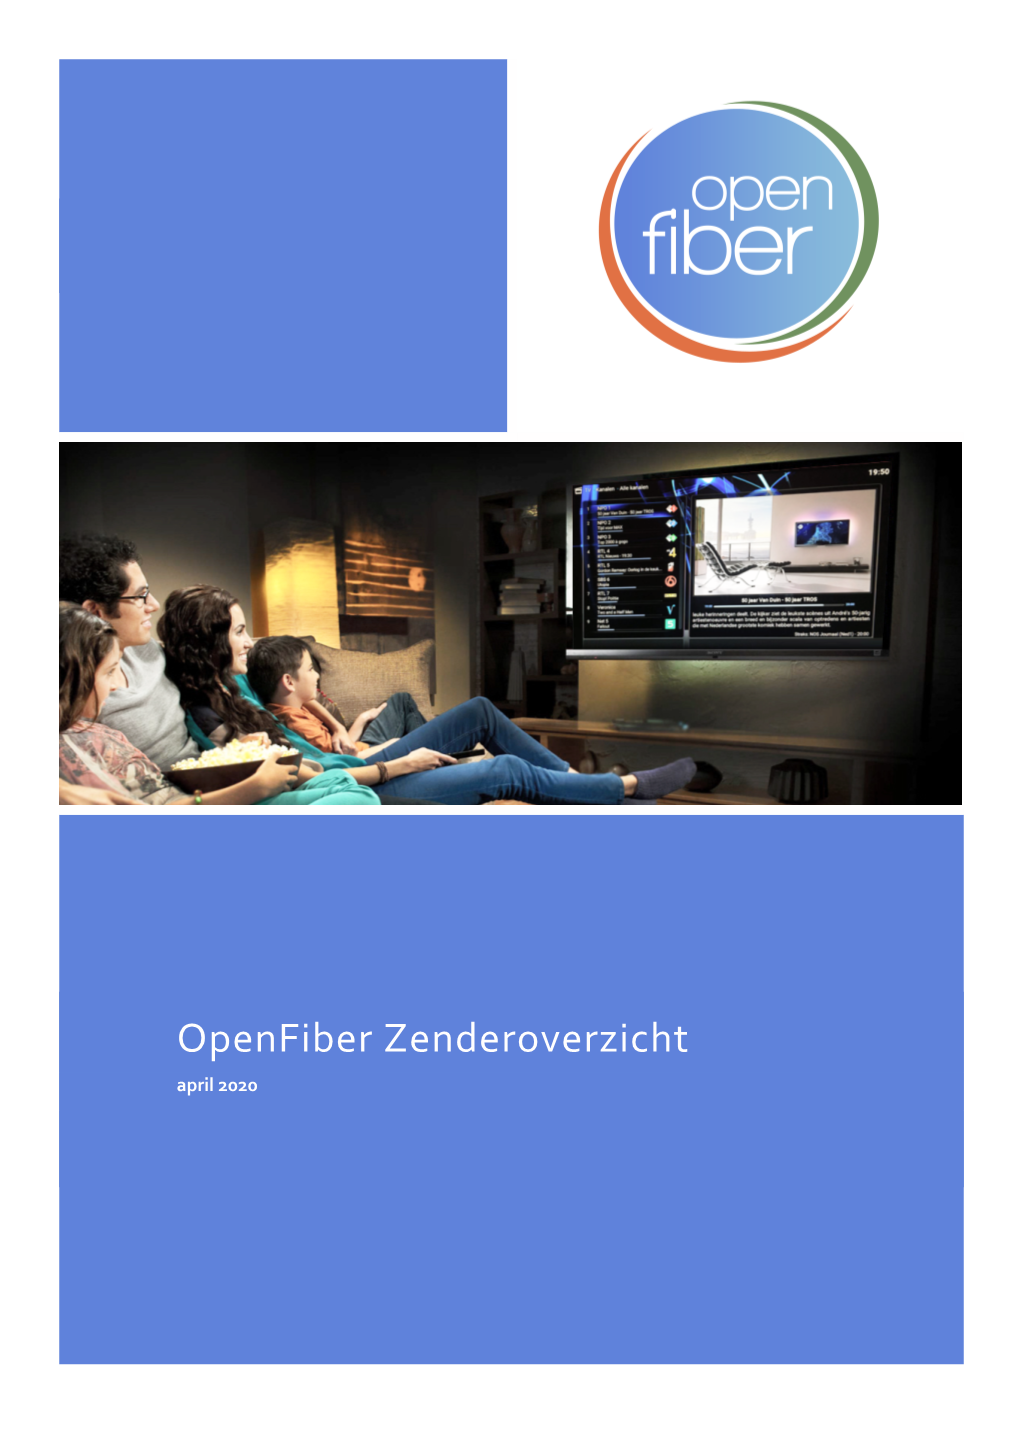 Openfiber Zenderoverzicht April 2020